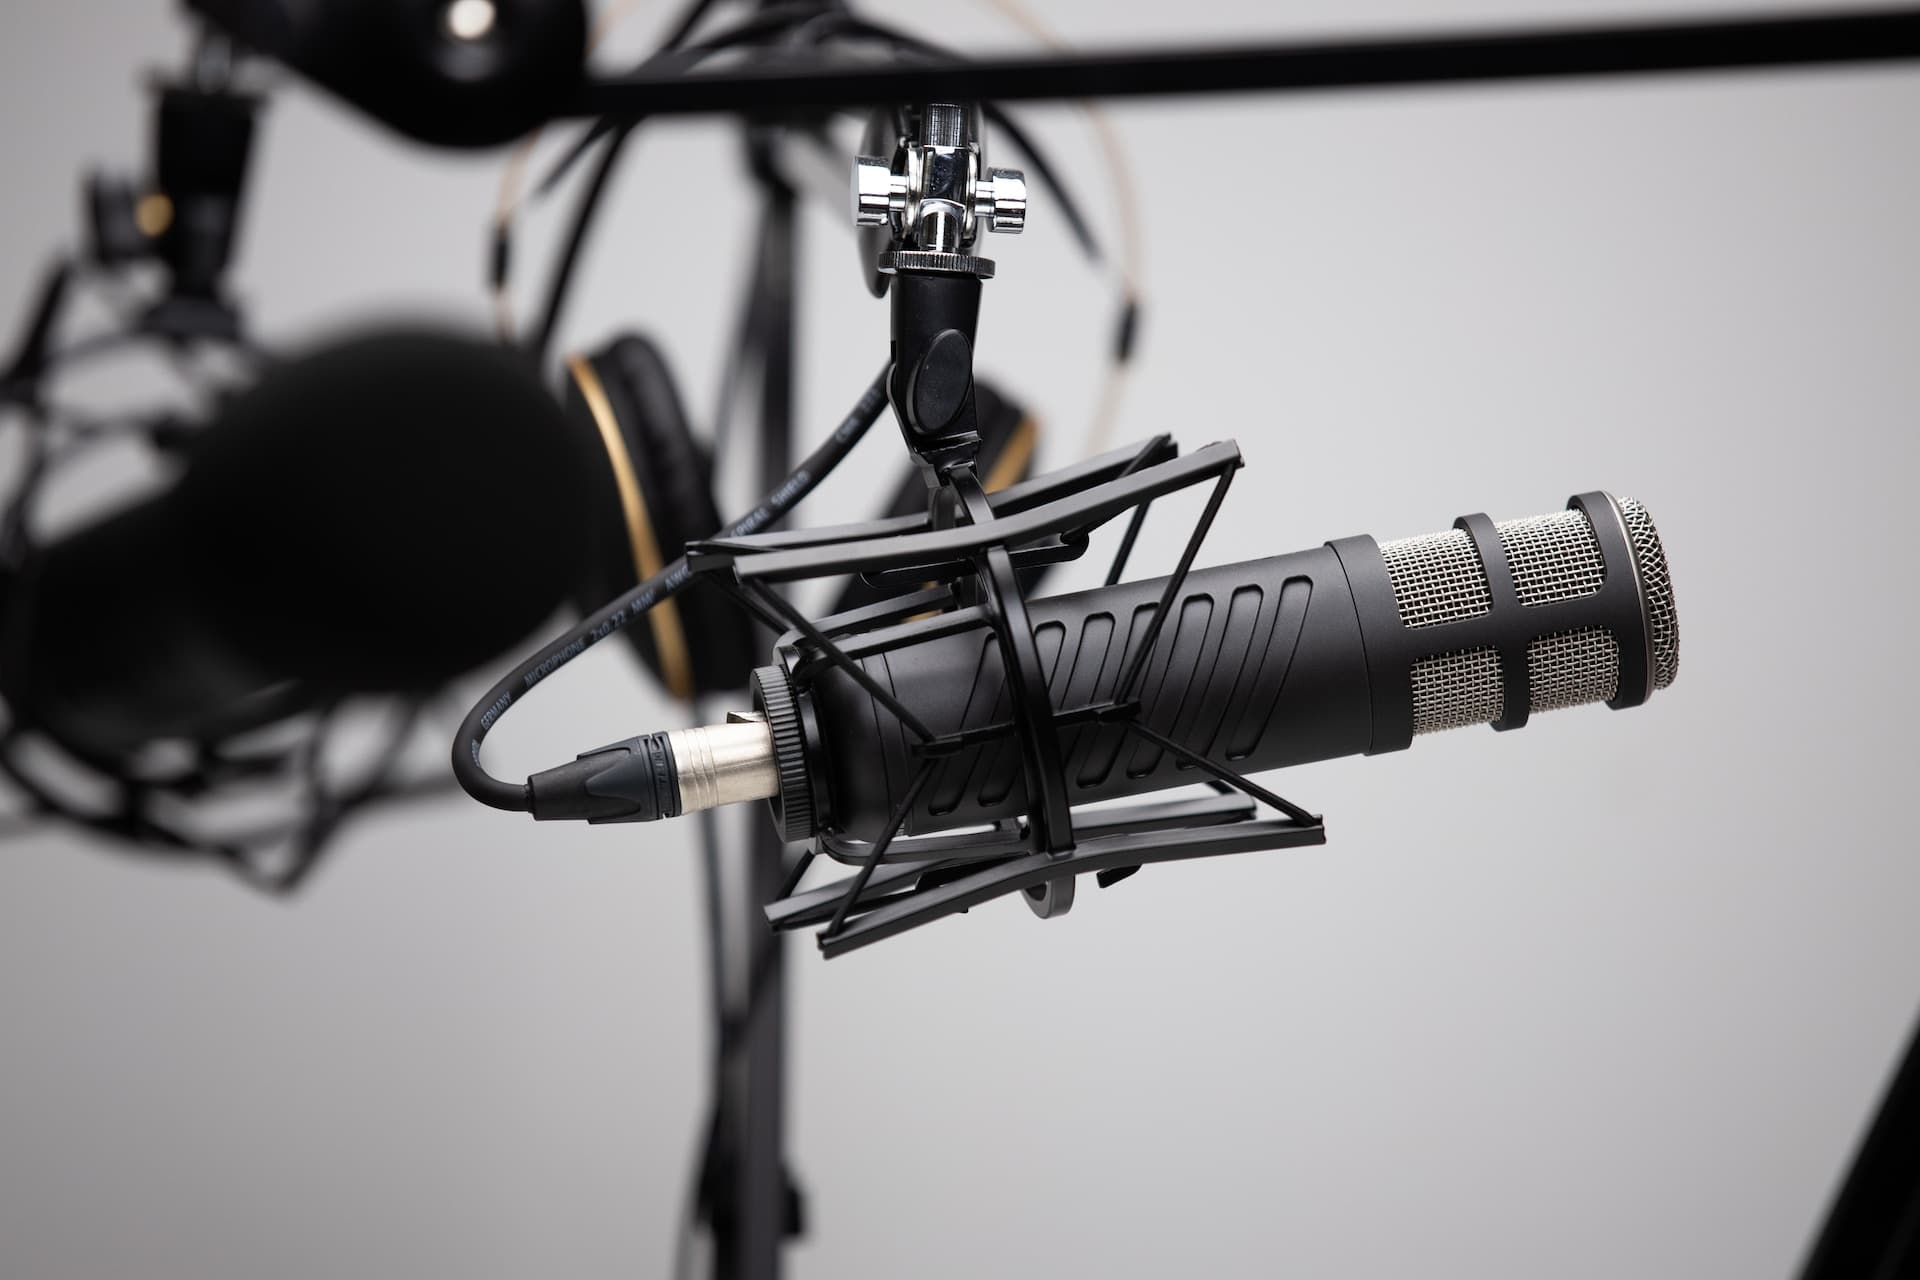 podcast mics - budget constraints